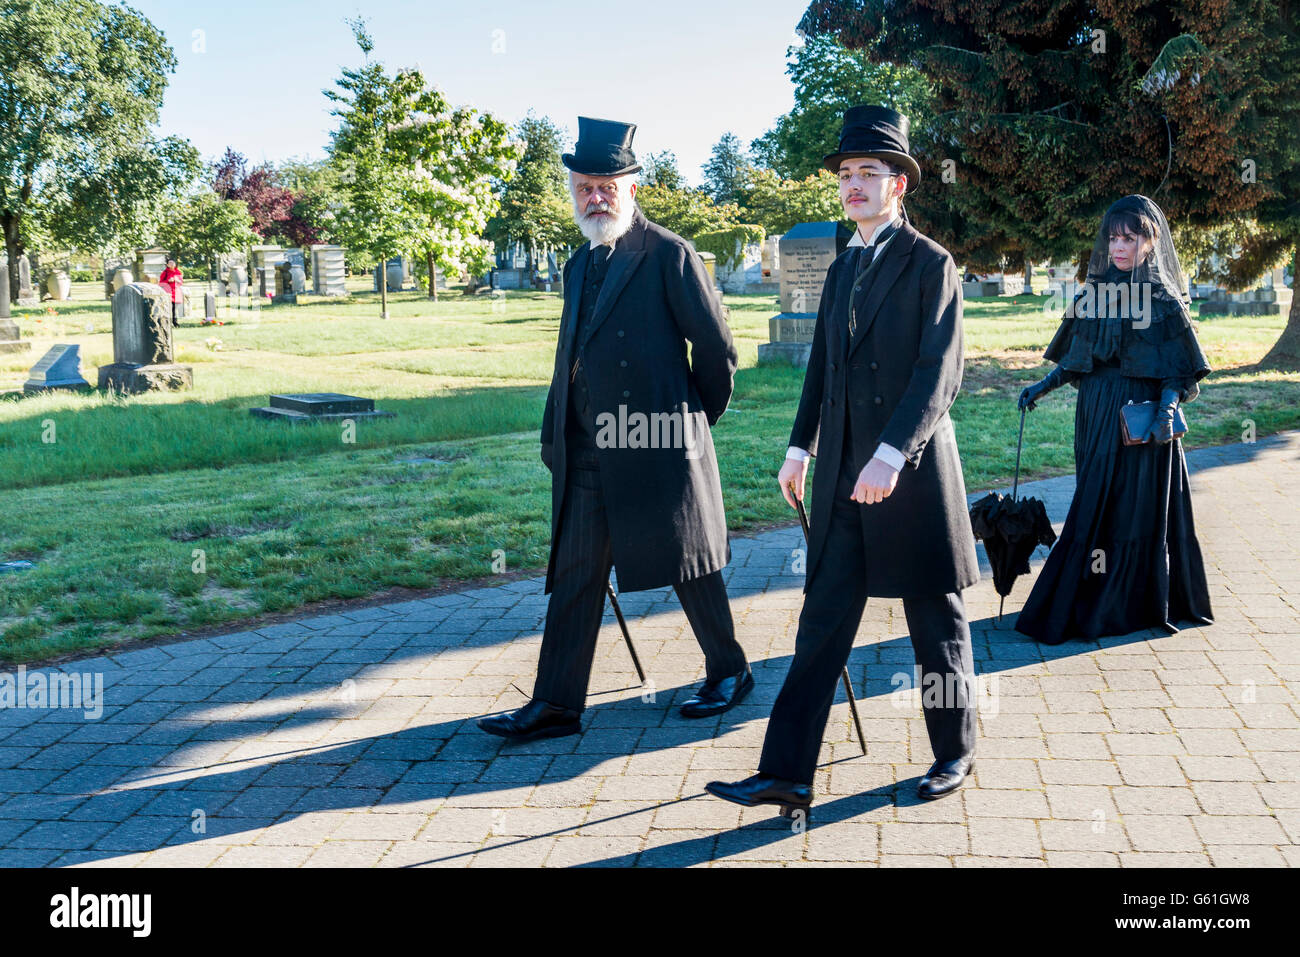 En deuil en costume noir traditionnel, Mountain View Cemetery, Vancouver, Colombie-Britannique, Canada, Banque D'Images